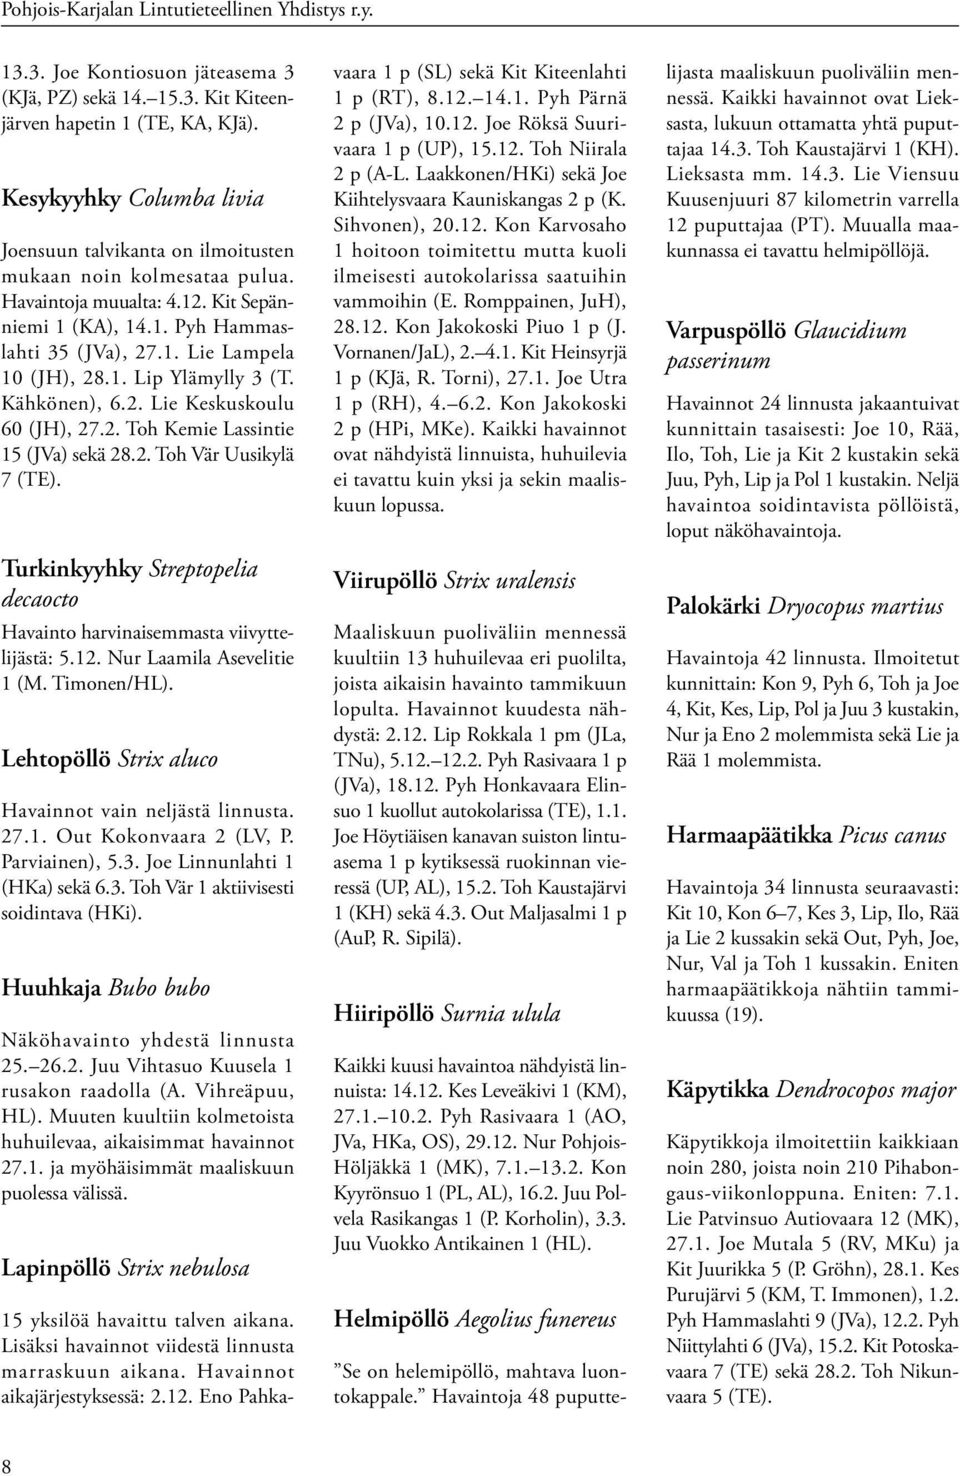 1. Lip Ylämylly 3 (T. Kähkönen), 6.2. Lie Keskuskoulu 60 (JH), 27.2. Toh Kemie Lassintie 15 (JVa) sekä 28.2. Toh Vär Uusikylä 7 (TE).